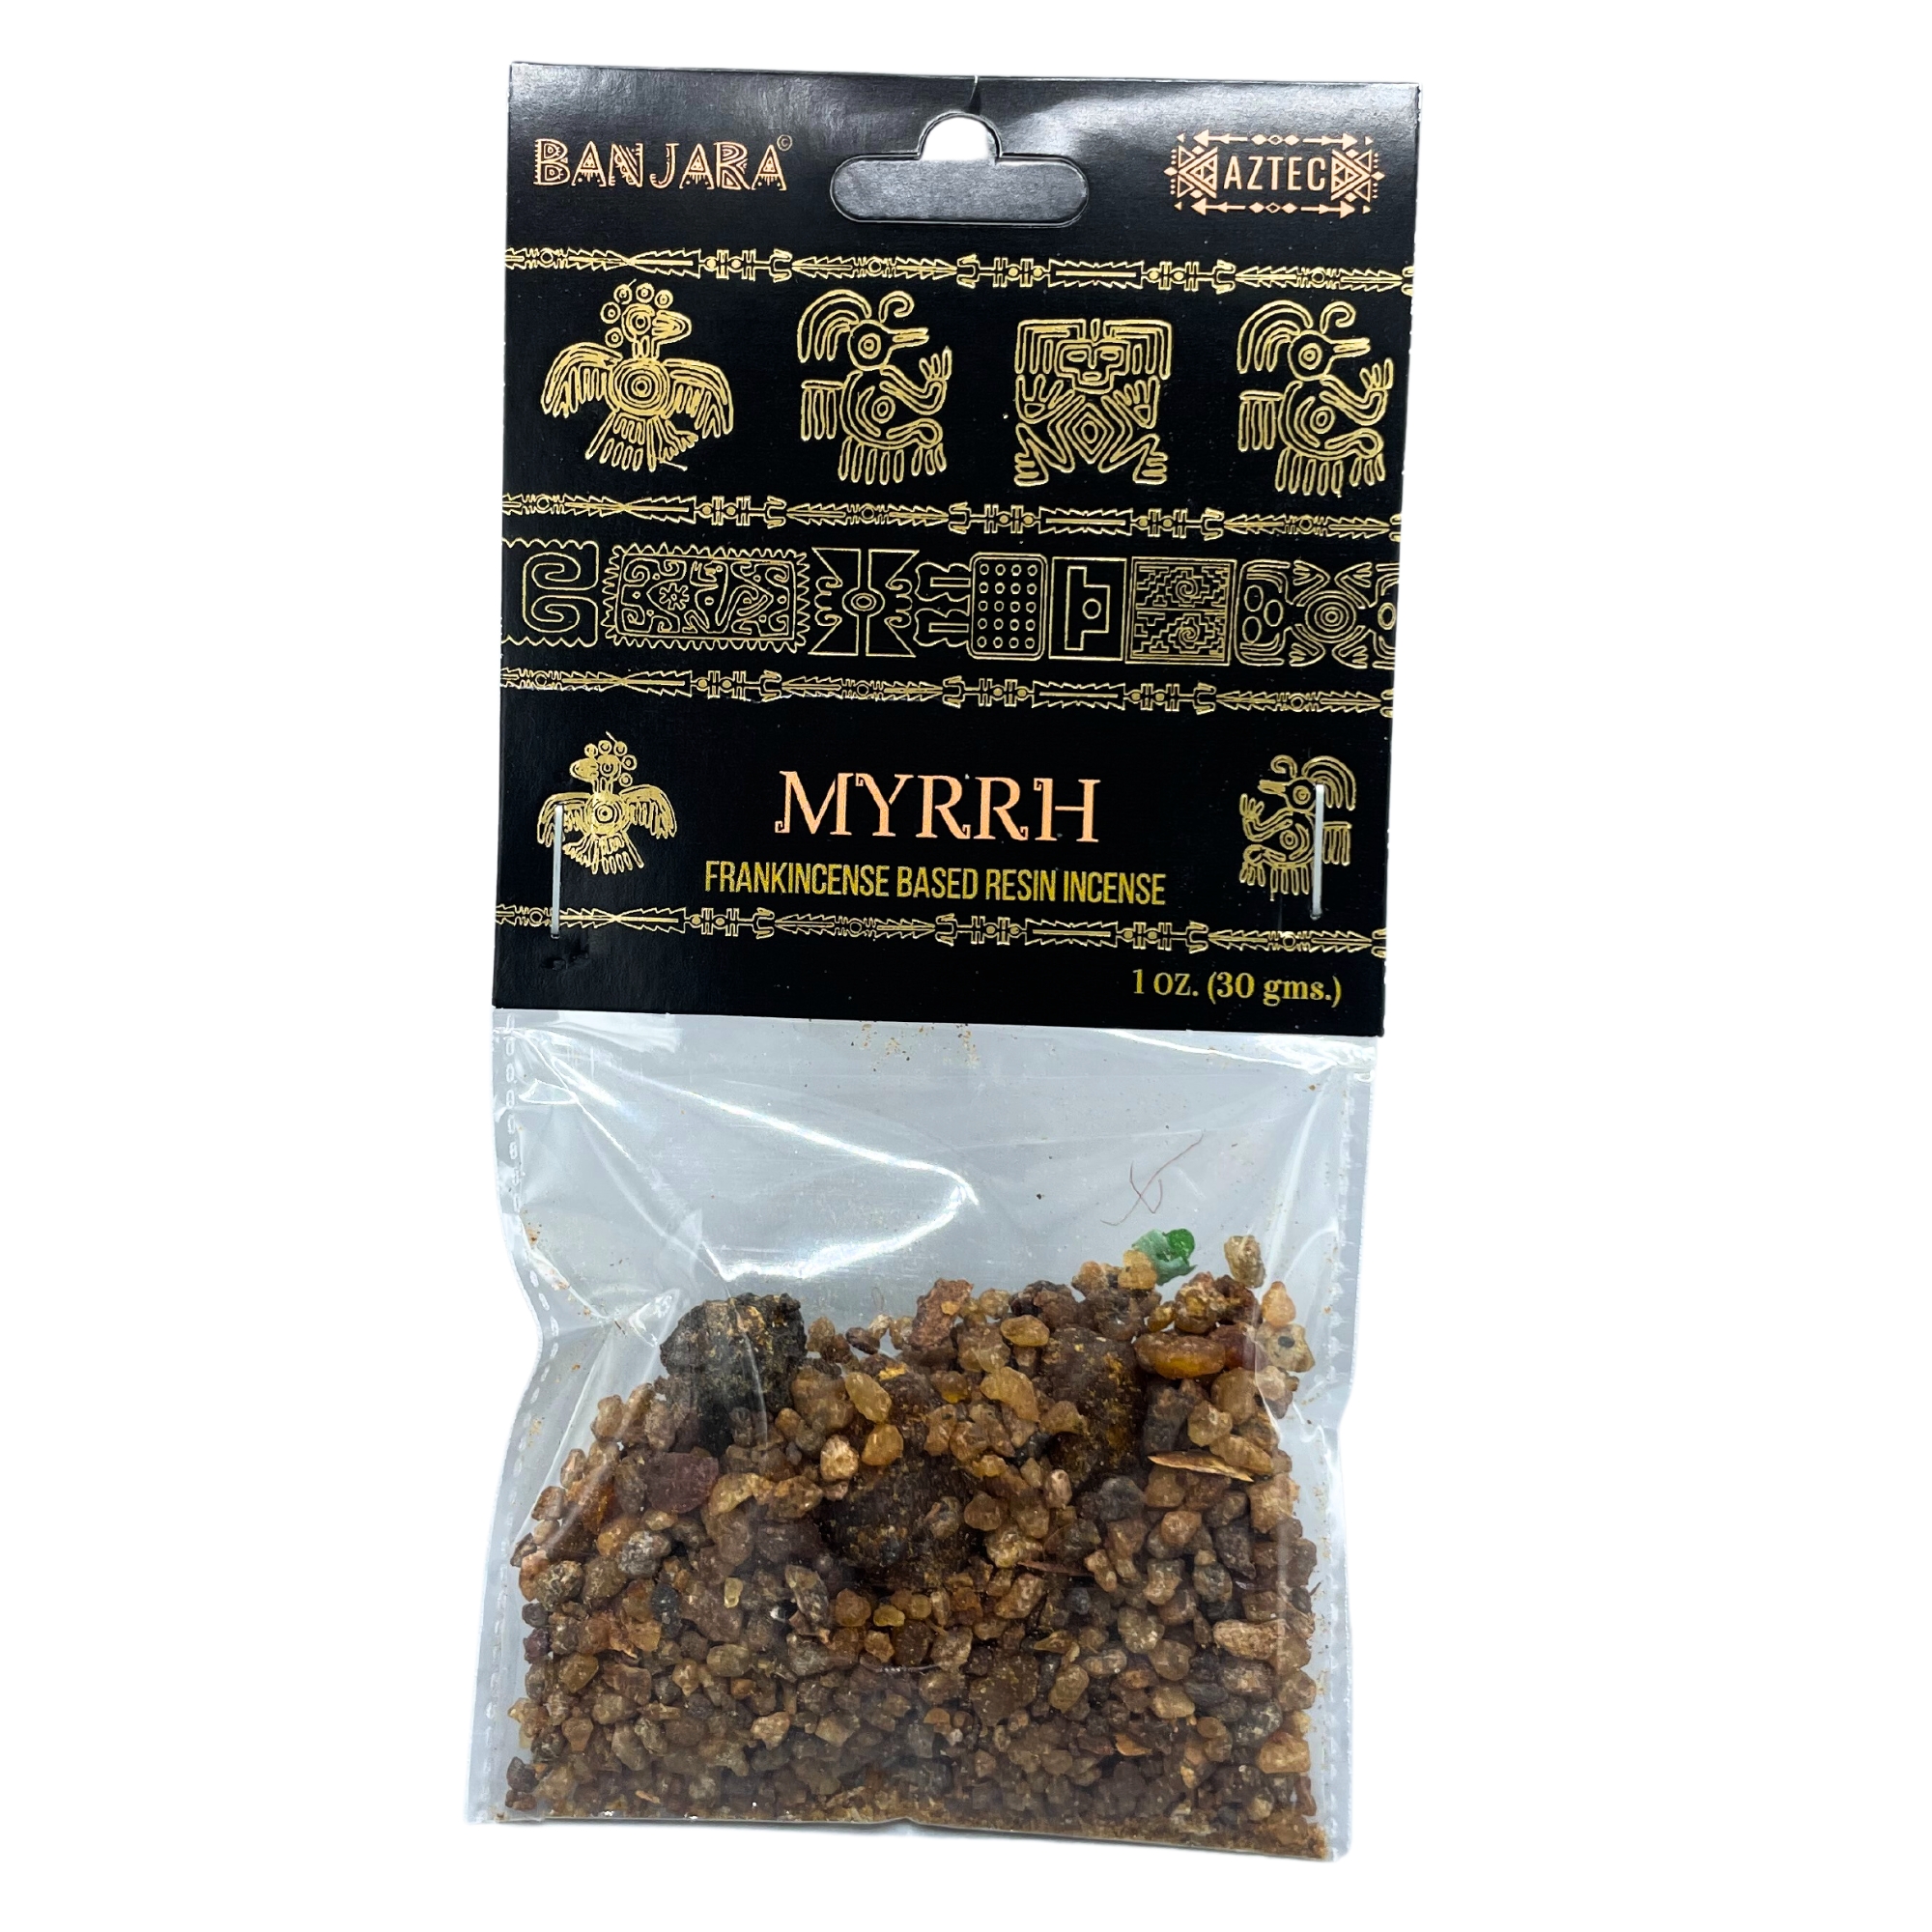 3 x Packs Banjara Tree Resin - Myrrh